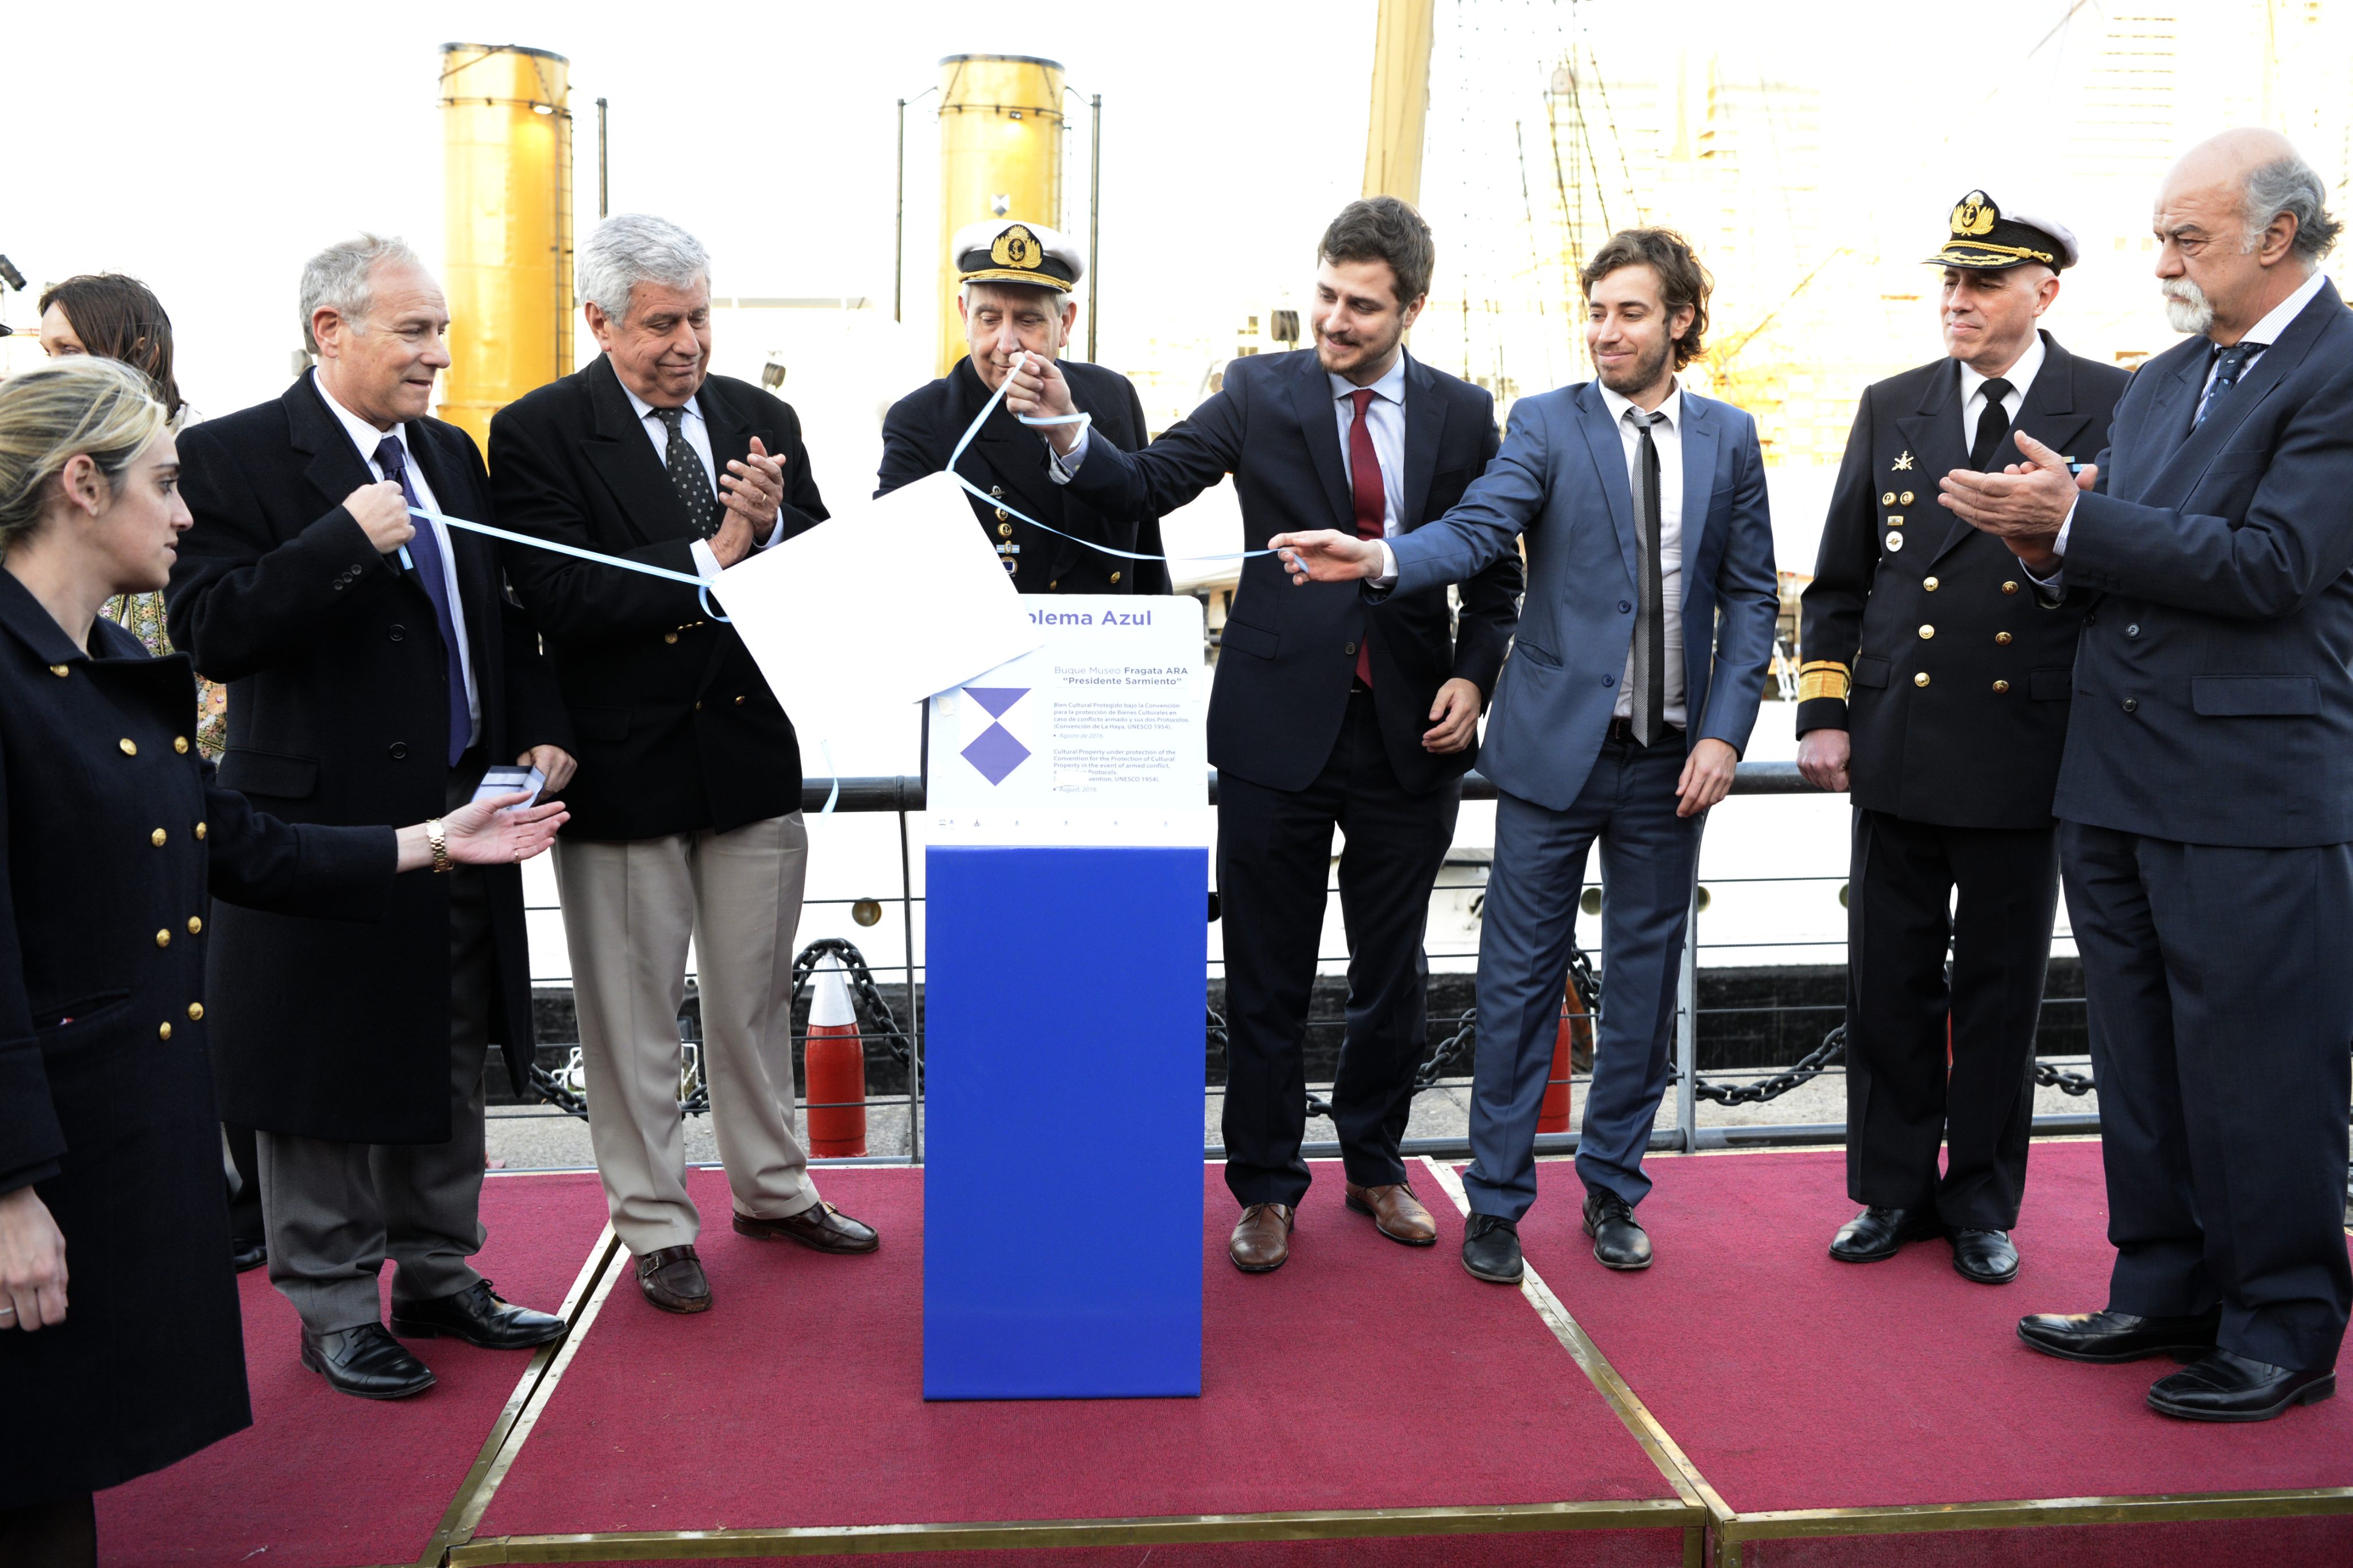 El buque museo Fragata Sarmiento fue distinguido con el Emblema Azul de la ONU